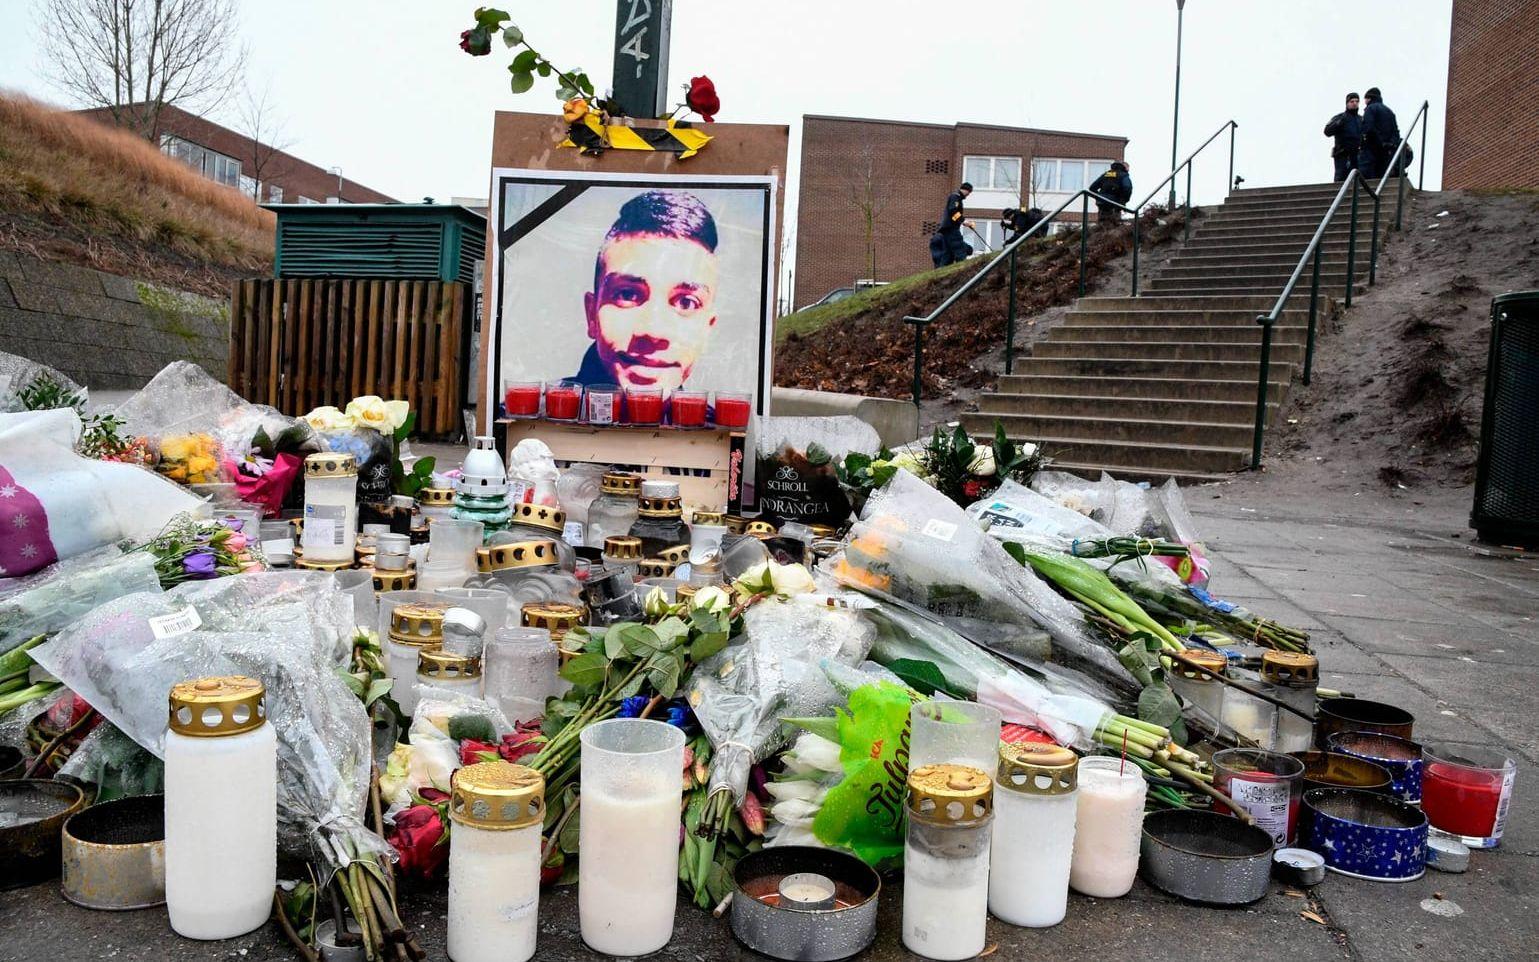 12 januari sköts 16-årige Ahmed Obaid ihjäl vid en busshållsplats i Rosengård 12 januari. Bild: Arkiv